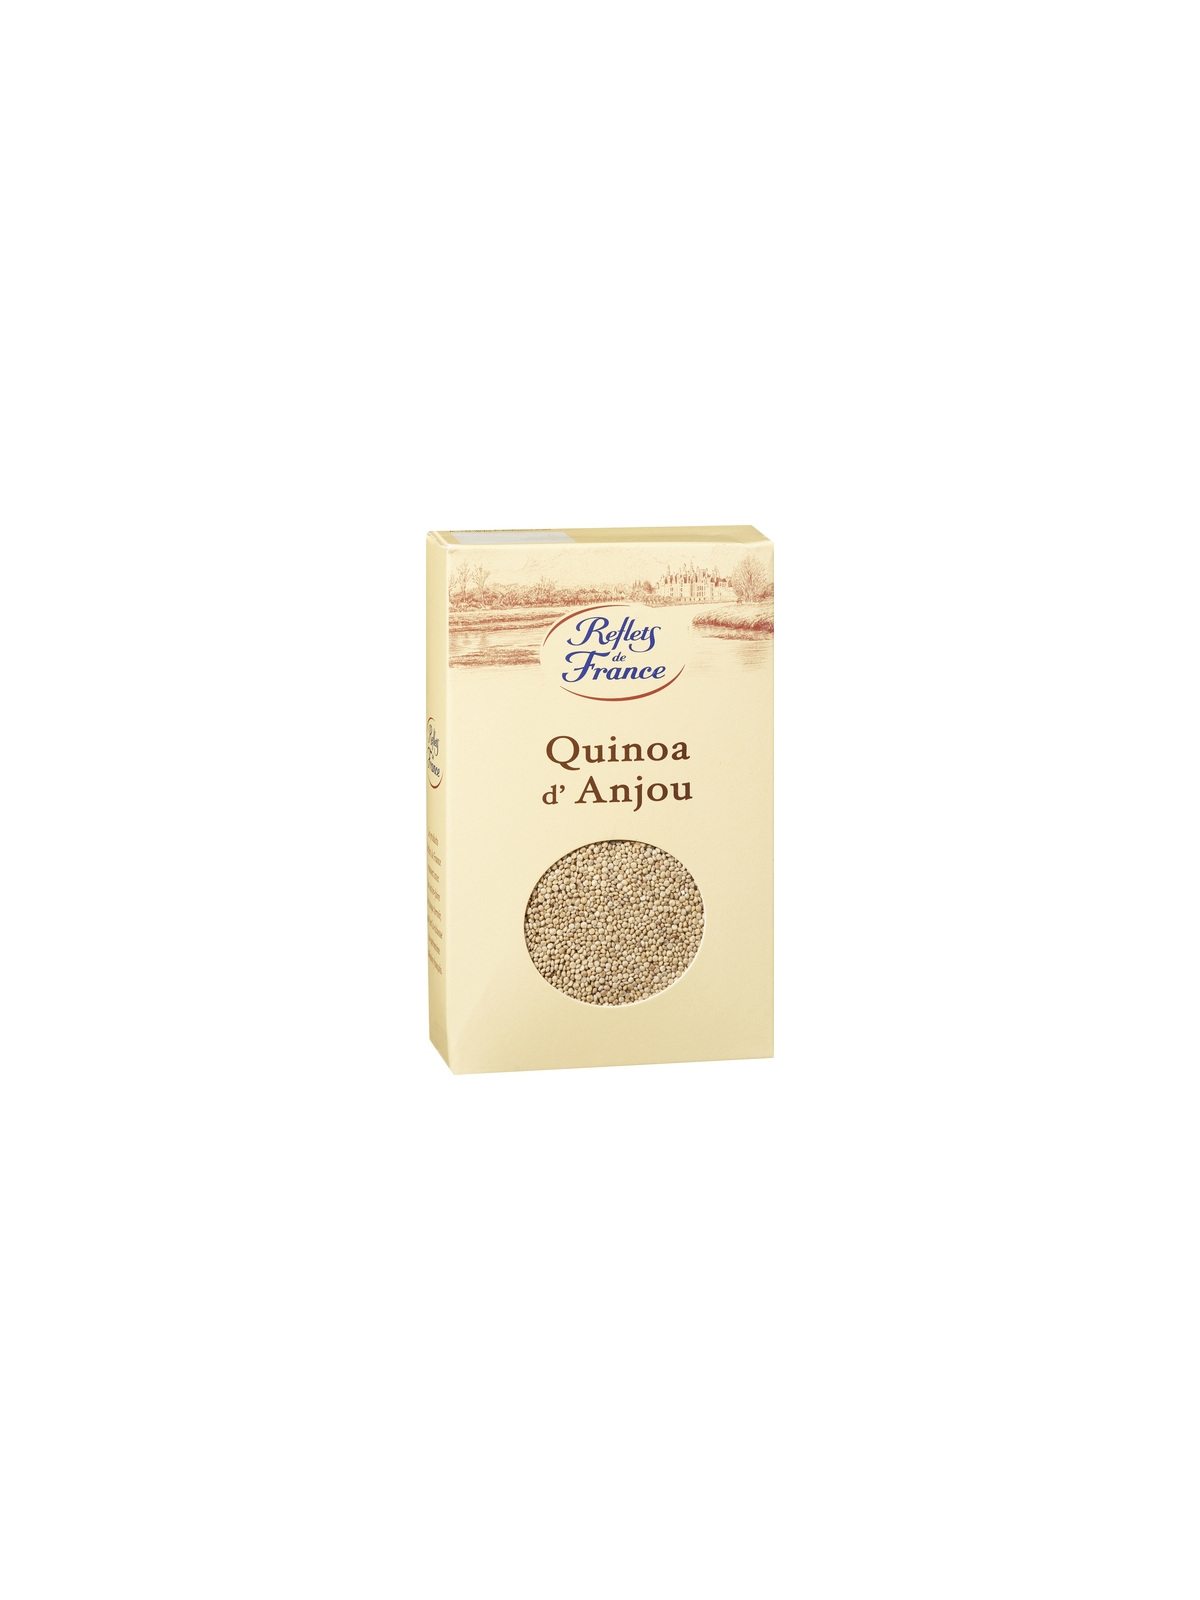 Quinoa d'Anjou REFLETS DE FRANCE